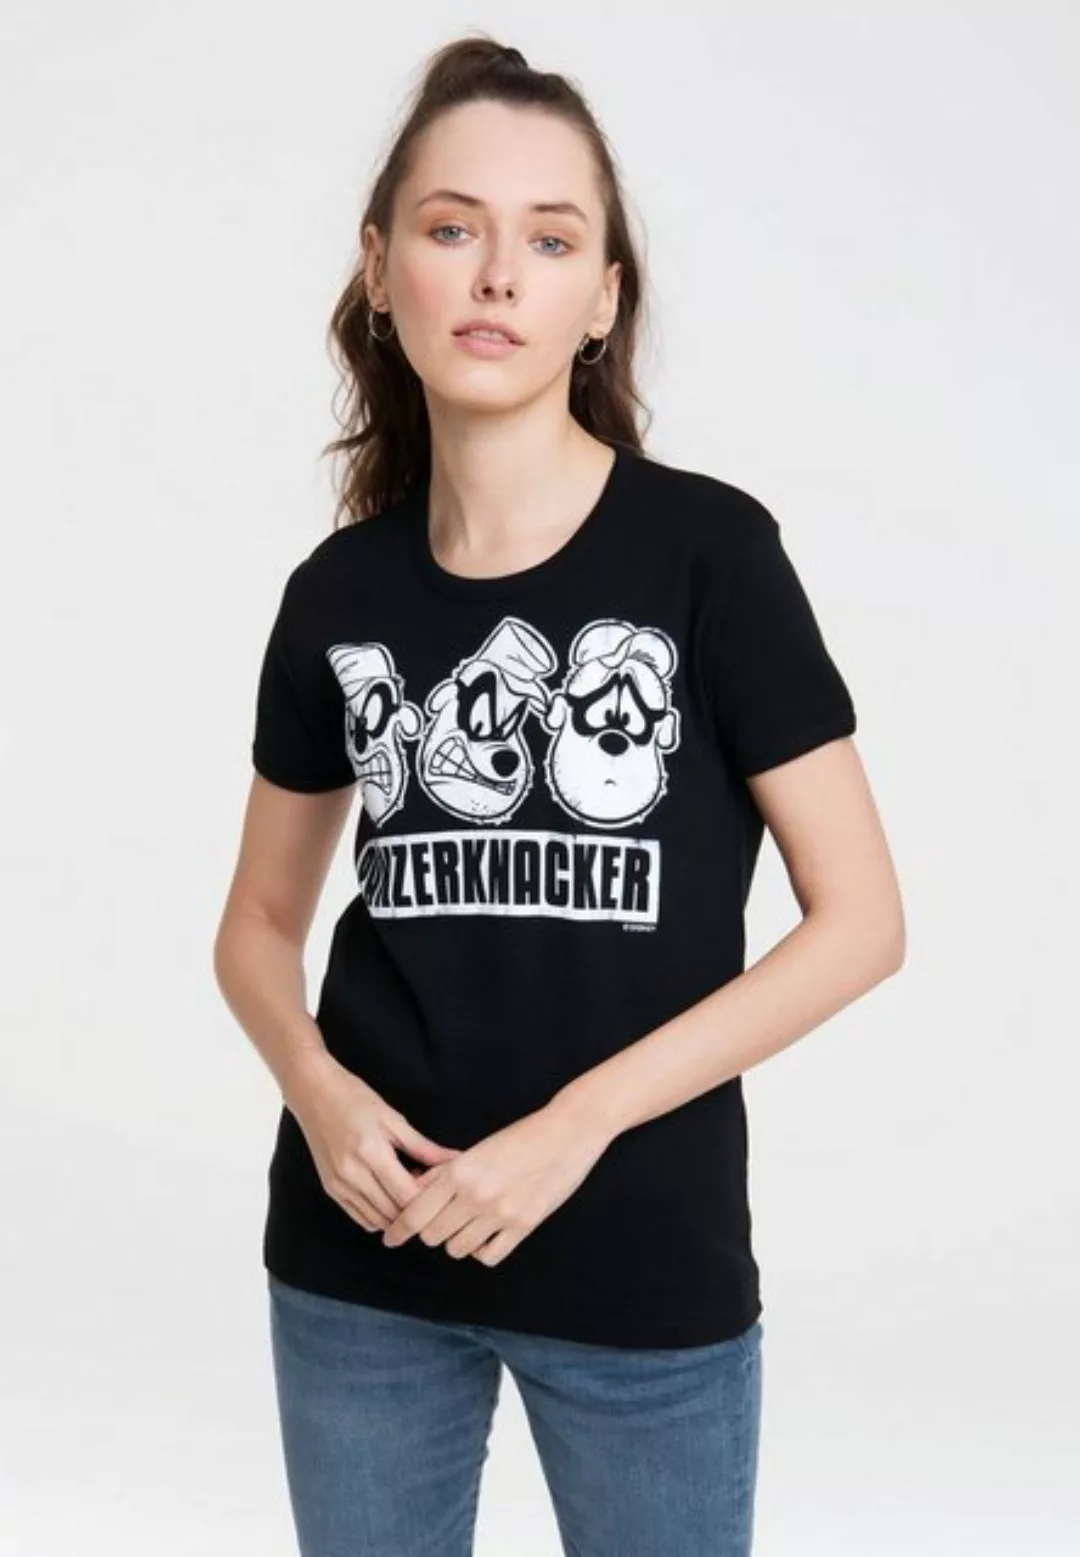 LOGOSHIRT T-Shirt "Panzerknacker", mit lizenziertem Originaldesign günstig online kaufen